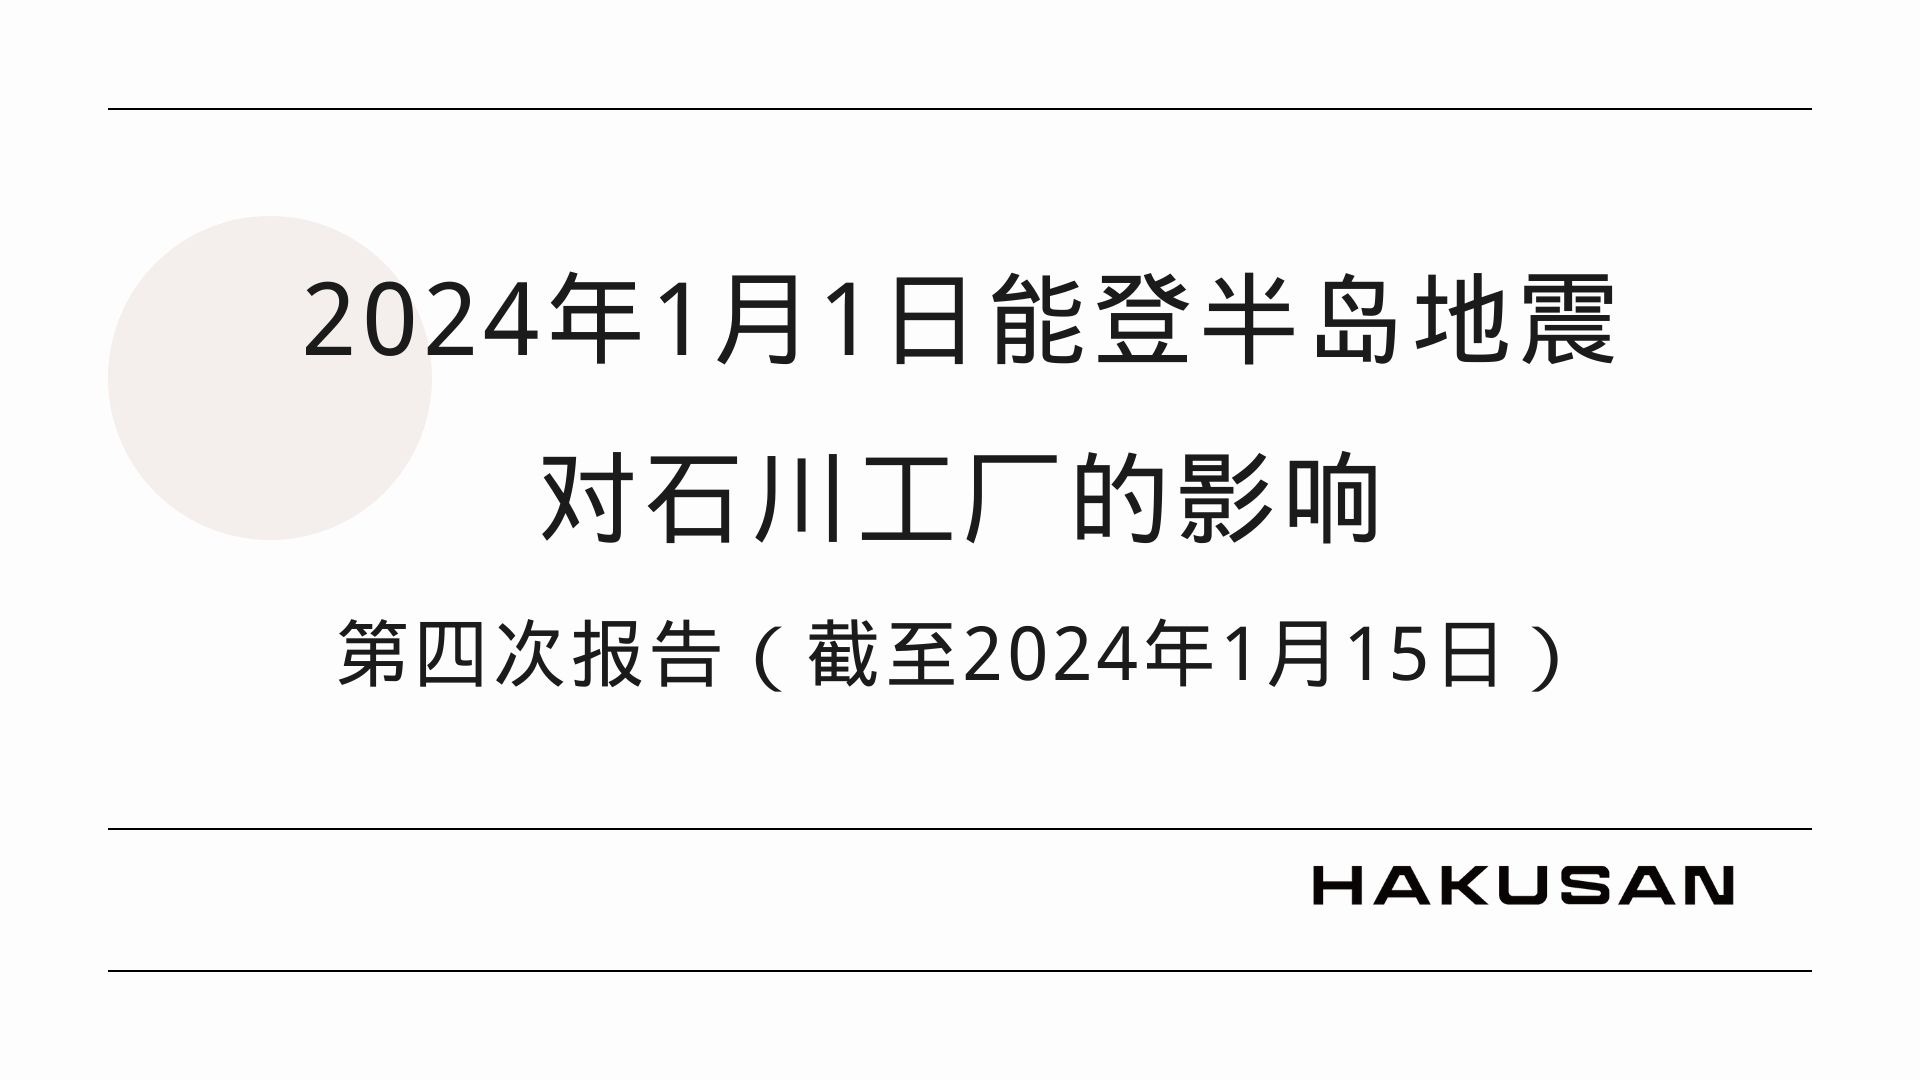 关于2024年能登半岛地震对石川工厂的影响 (第四报告_截至2024年1月15日)